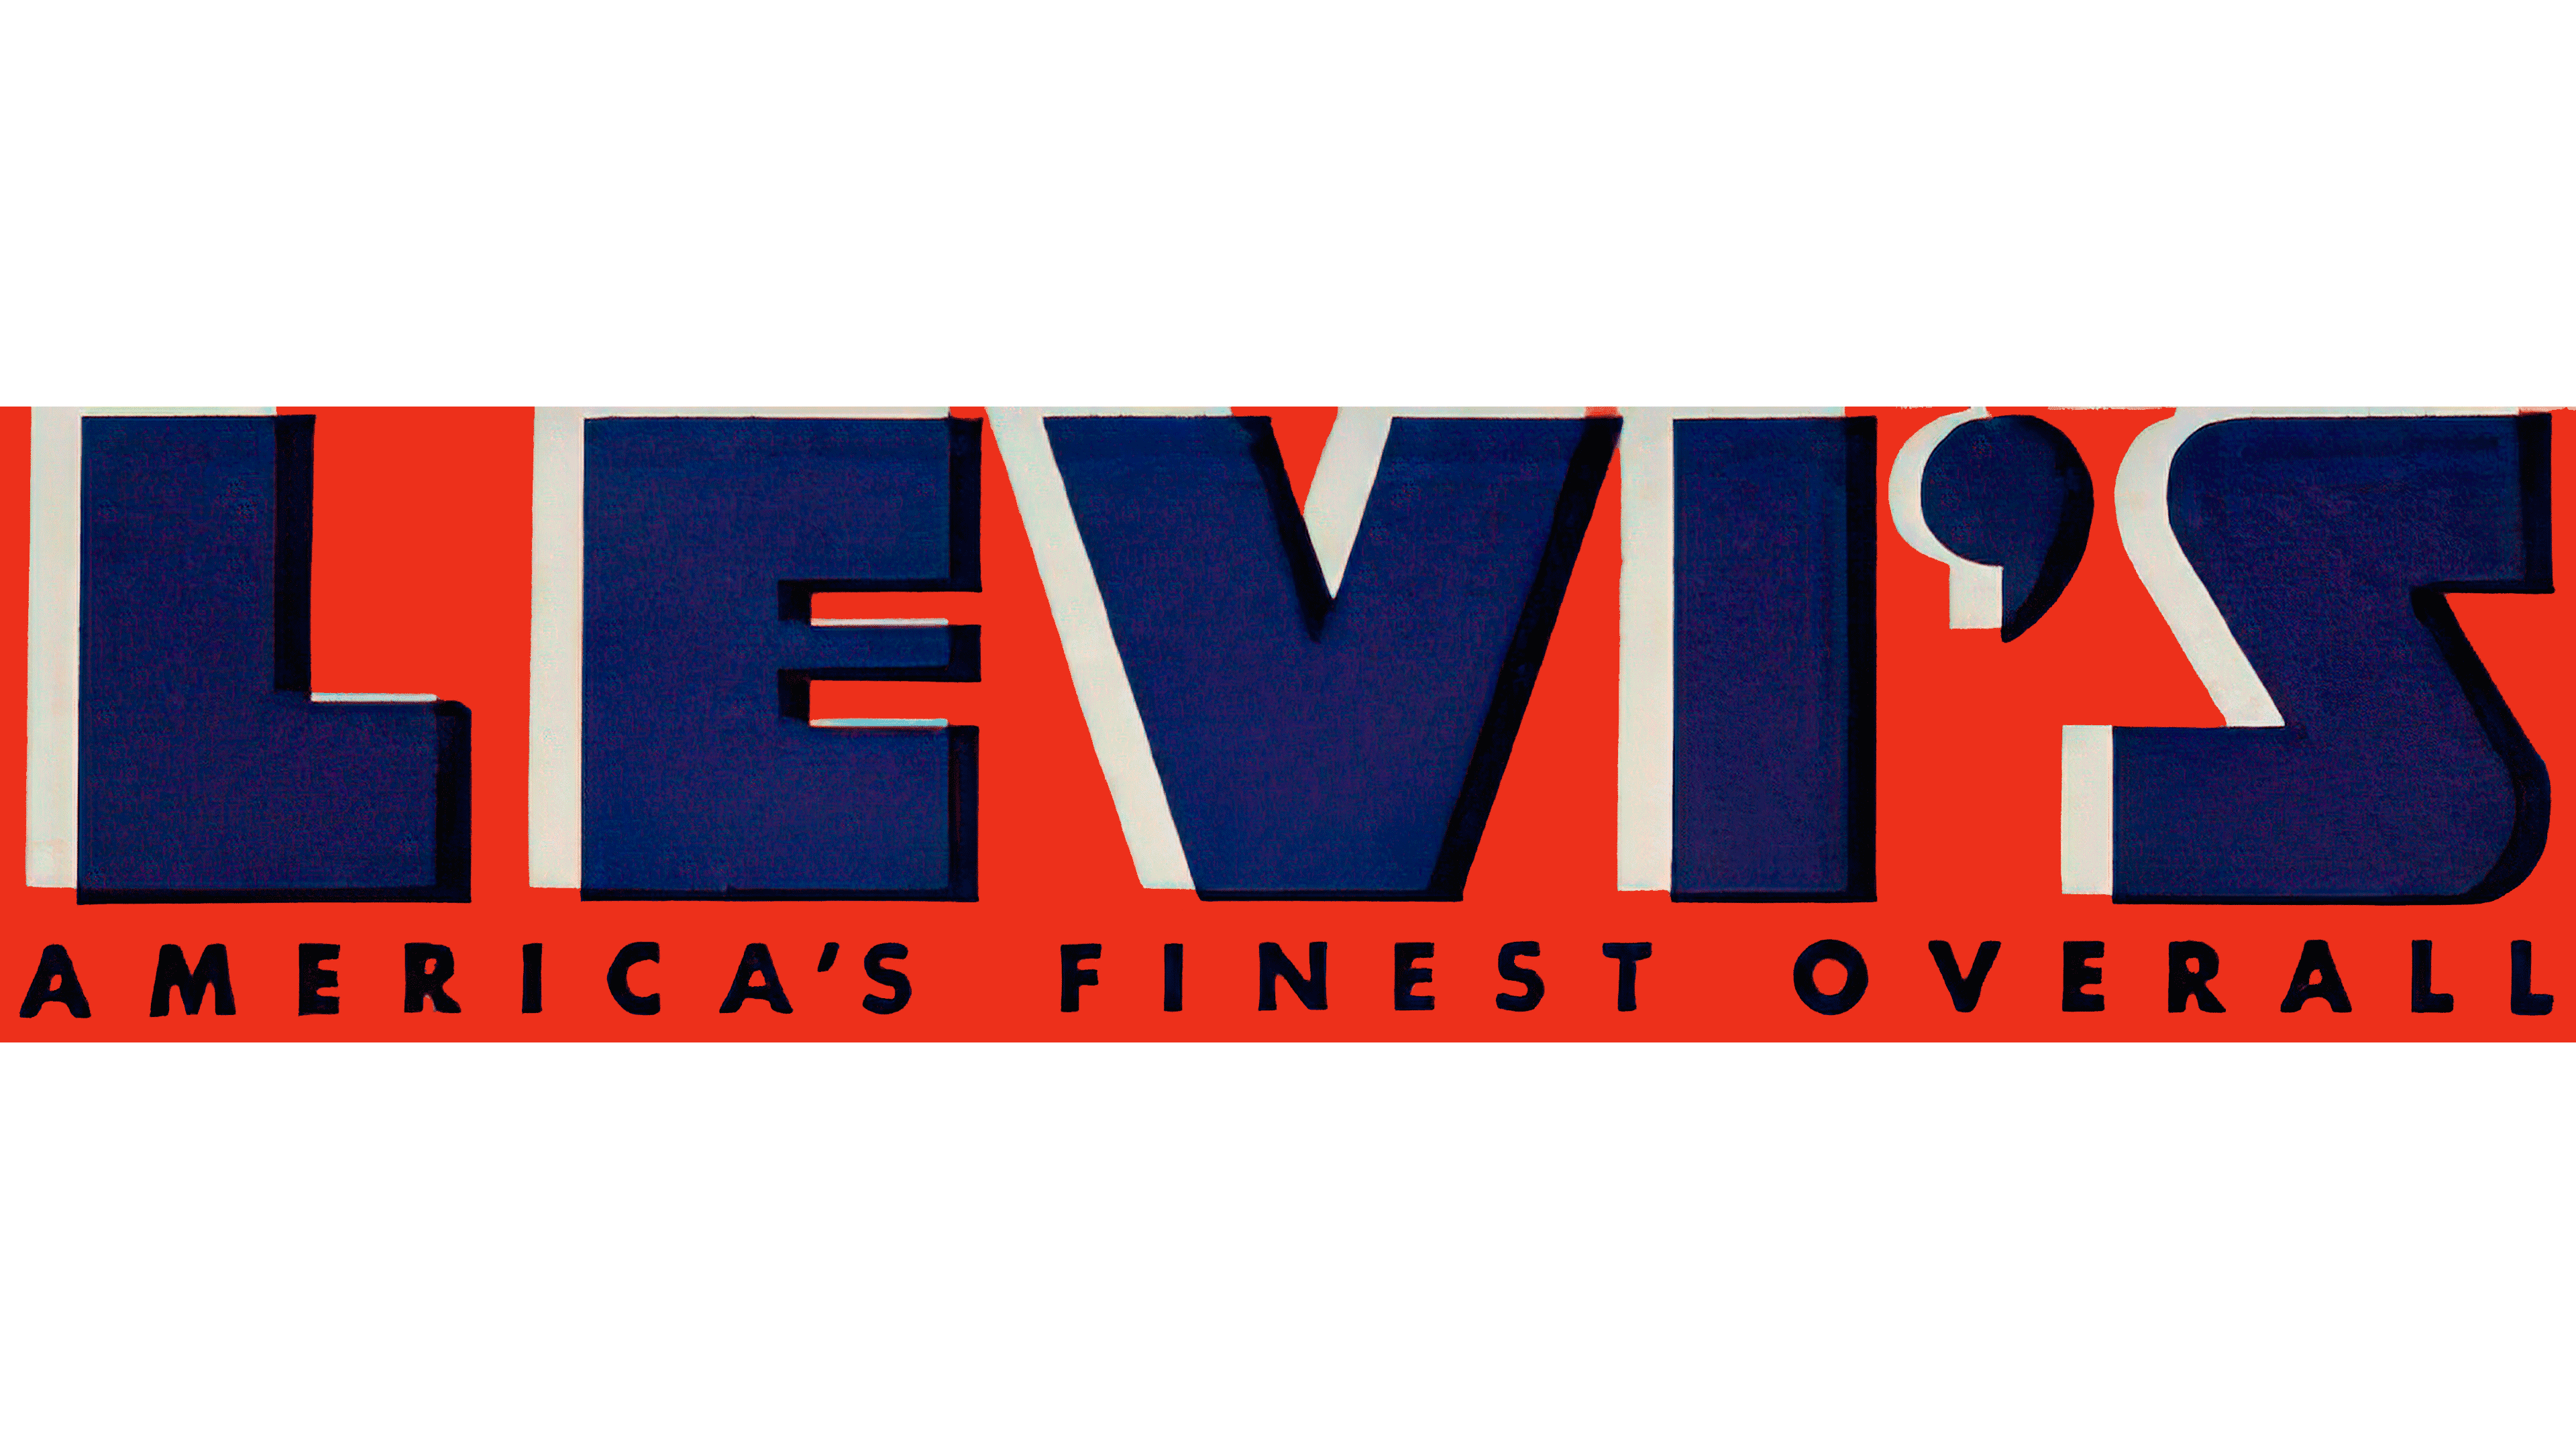 Levis Logo Histoire Et Signification Evolution Symbol - vrogue.co